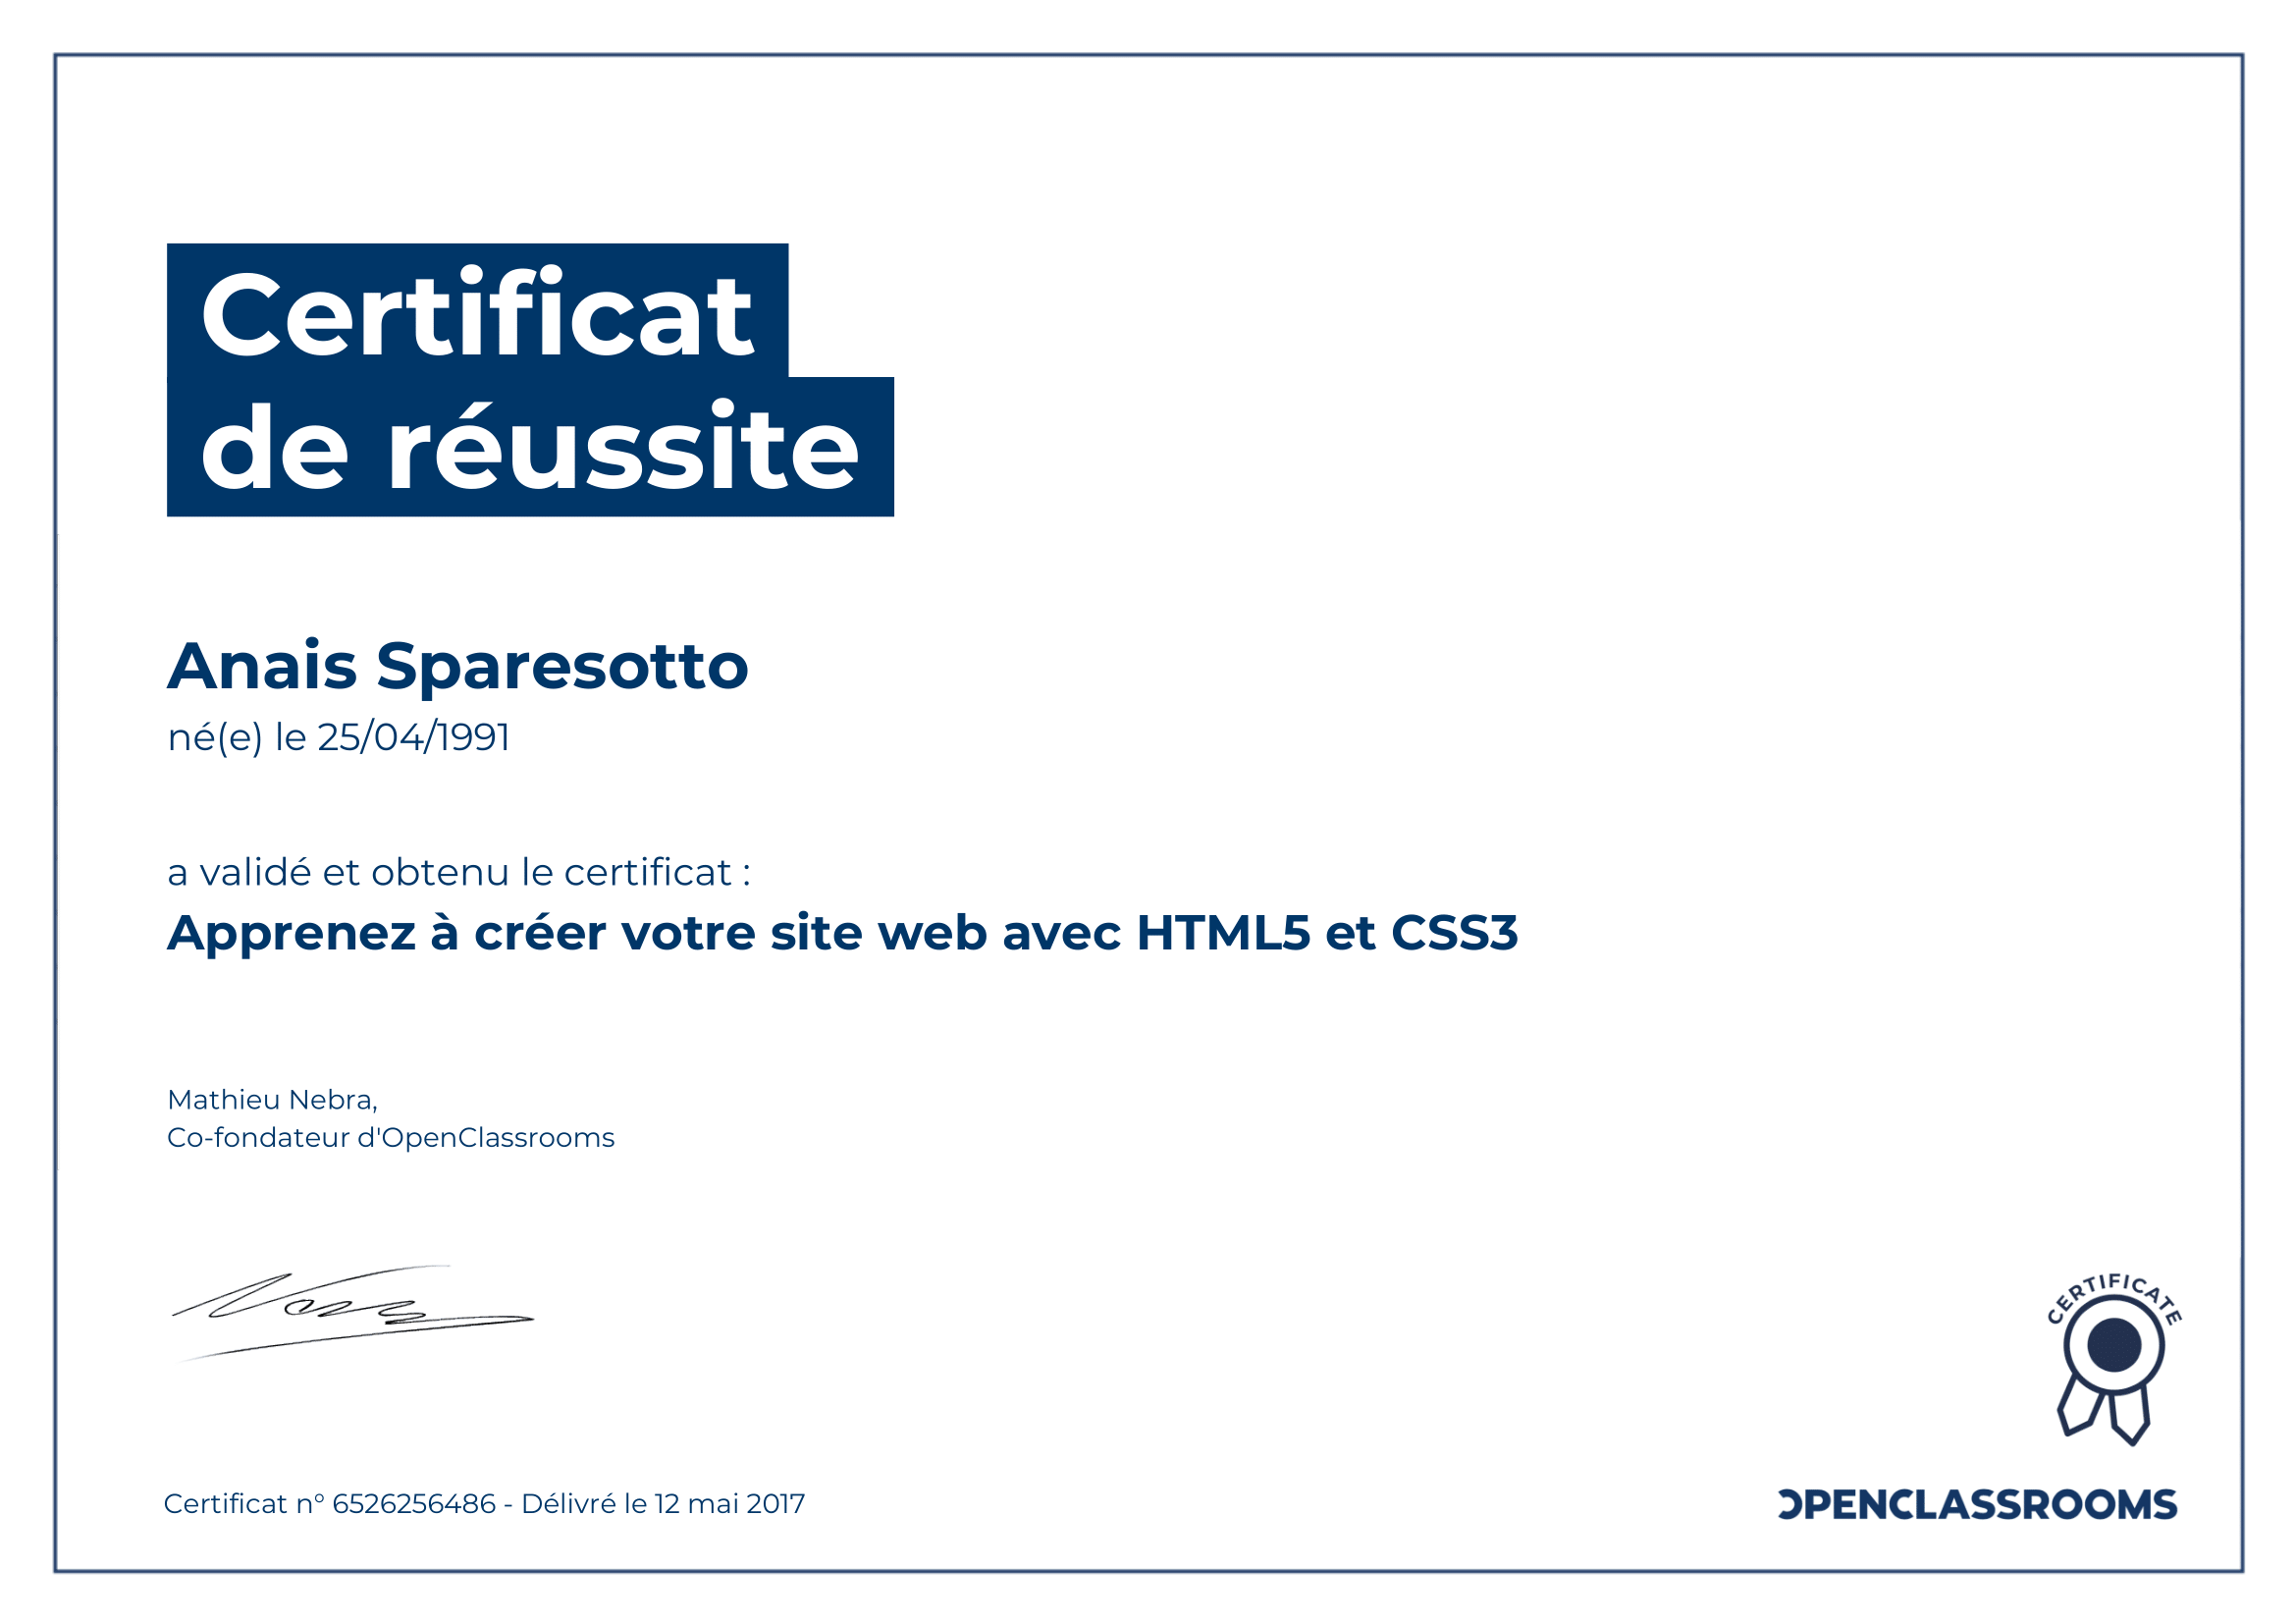 certificat de réussite html5 et css3 sparesotto anais